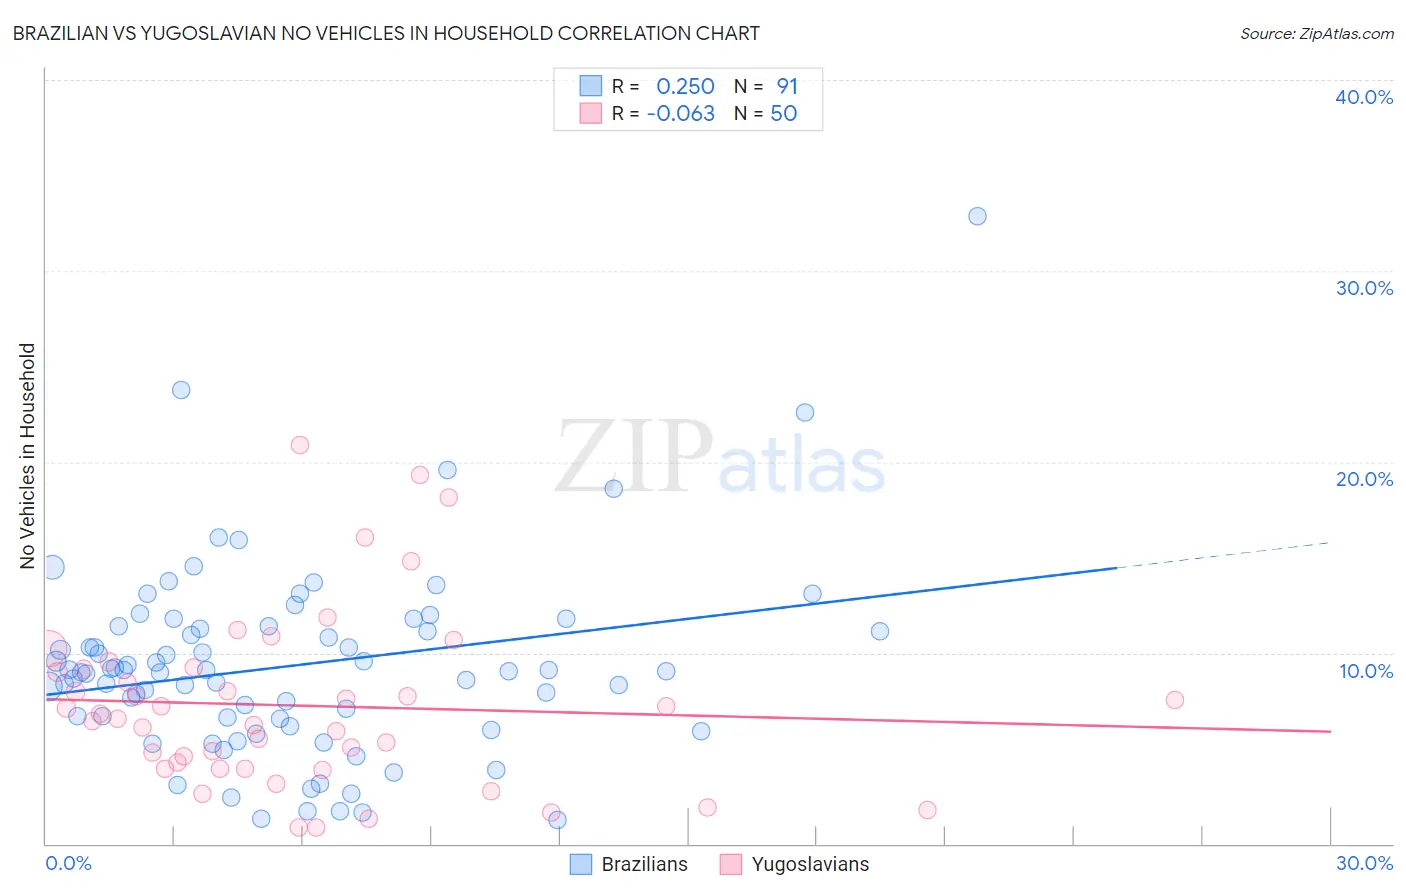 Brazilian vs Yugoslavian No Vehicles in Household